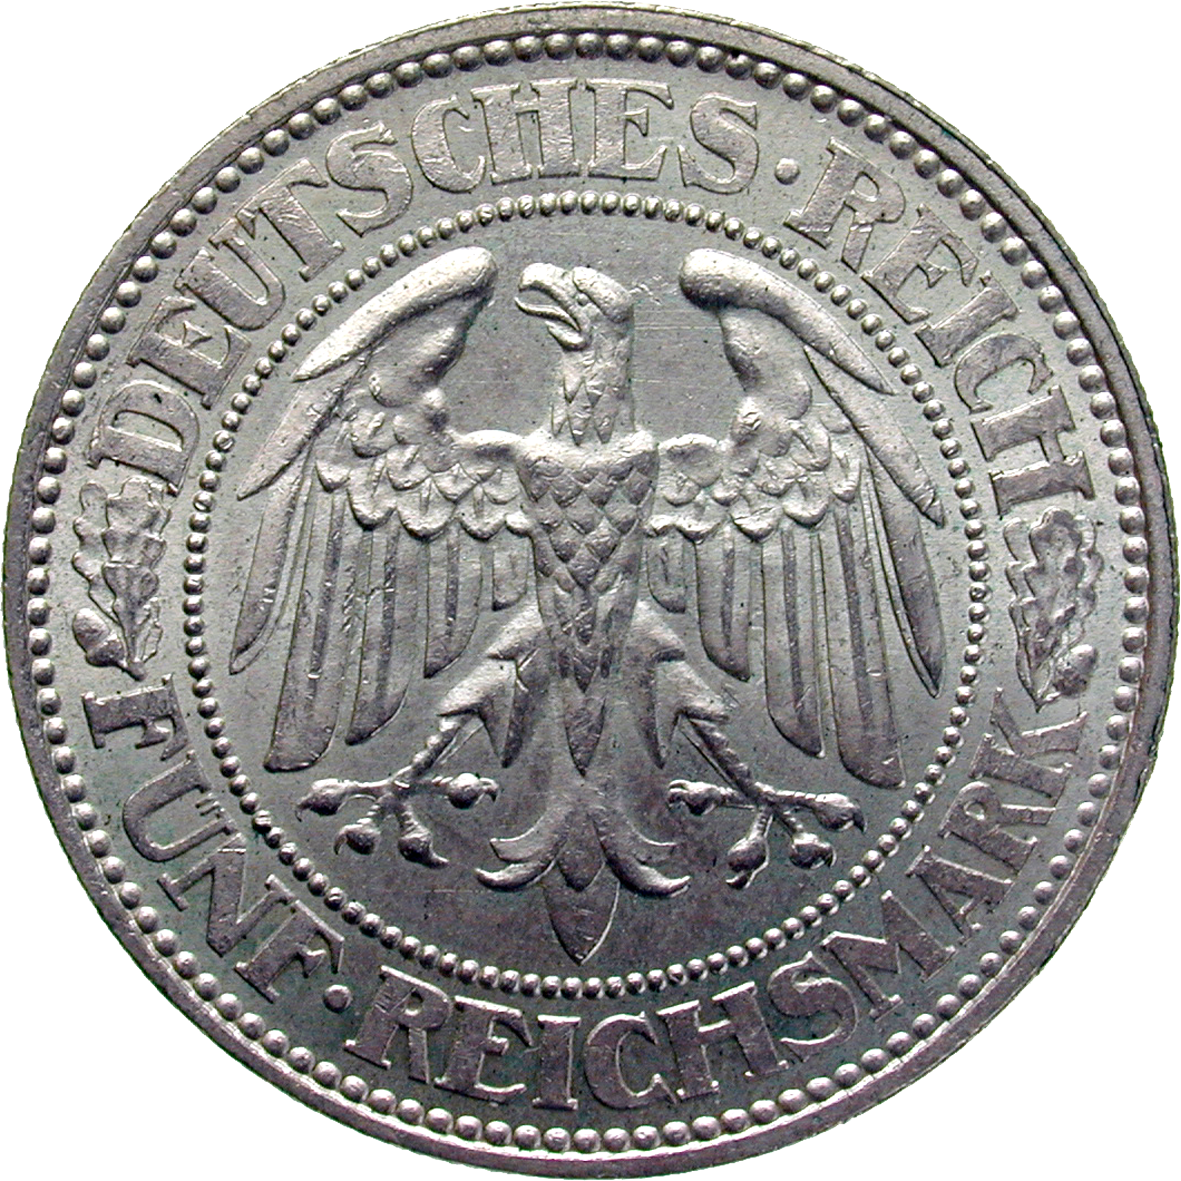 German Empire, Weimar Republic, 5 Reichsmark 1927 (obverse)